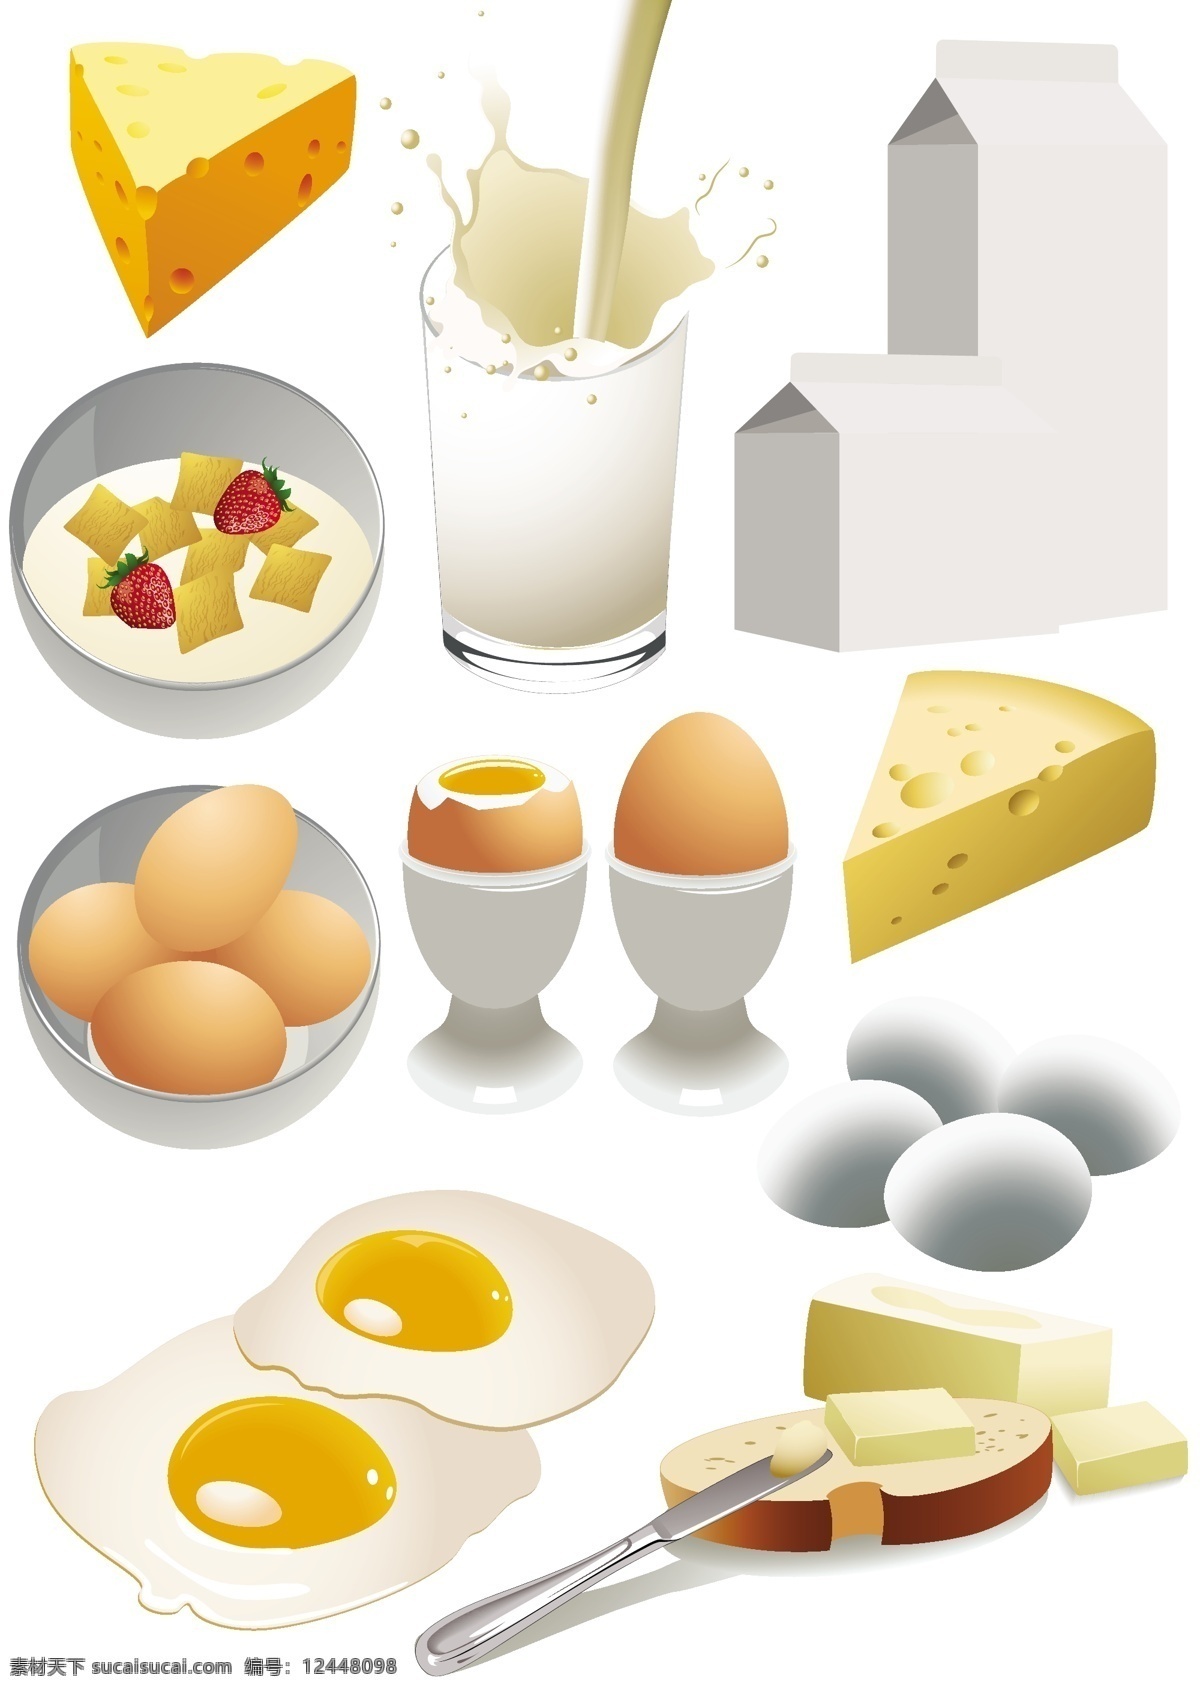 奶酪 奶制品 矢量 材料 产品 矢量素材 向量的食品 矢量图 日常生活